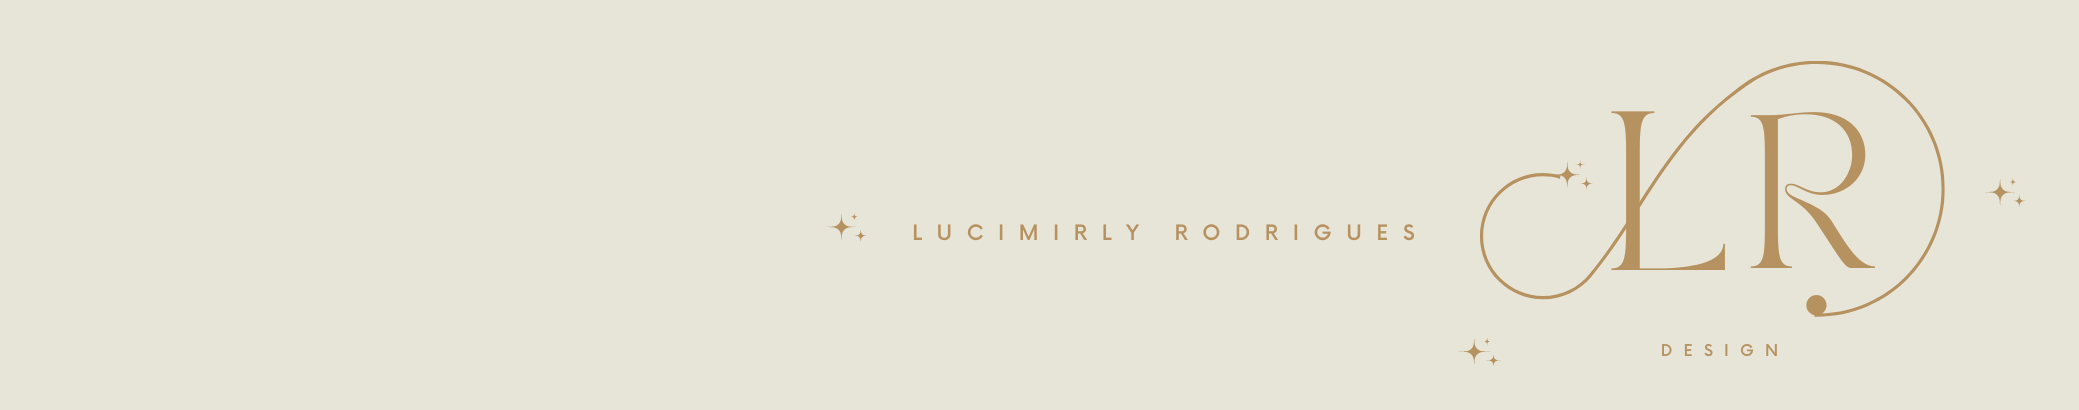 Banner de perfil de Lucimirly Rodrigues